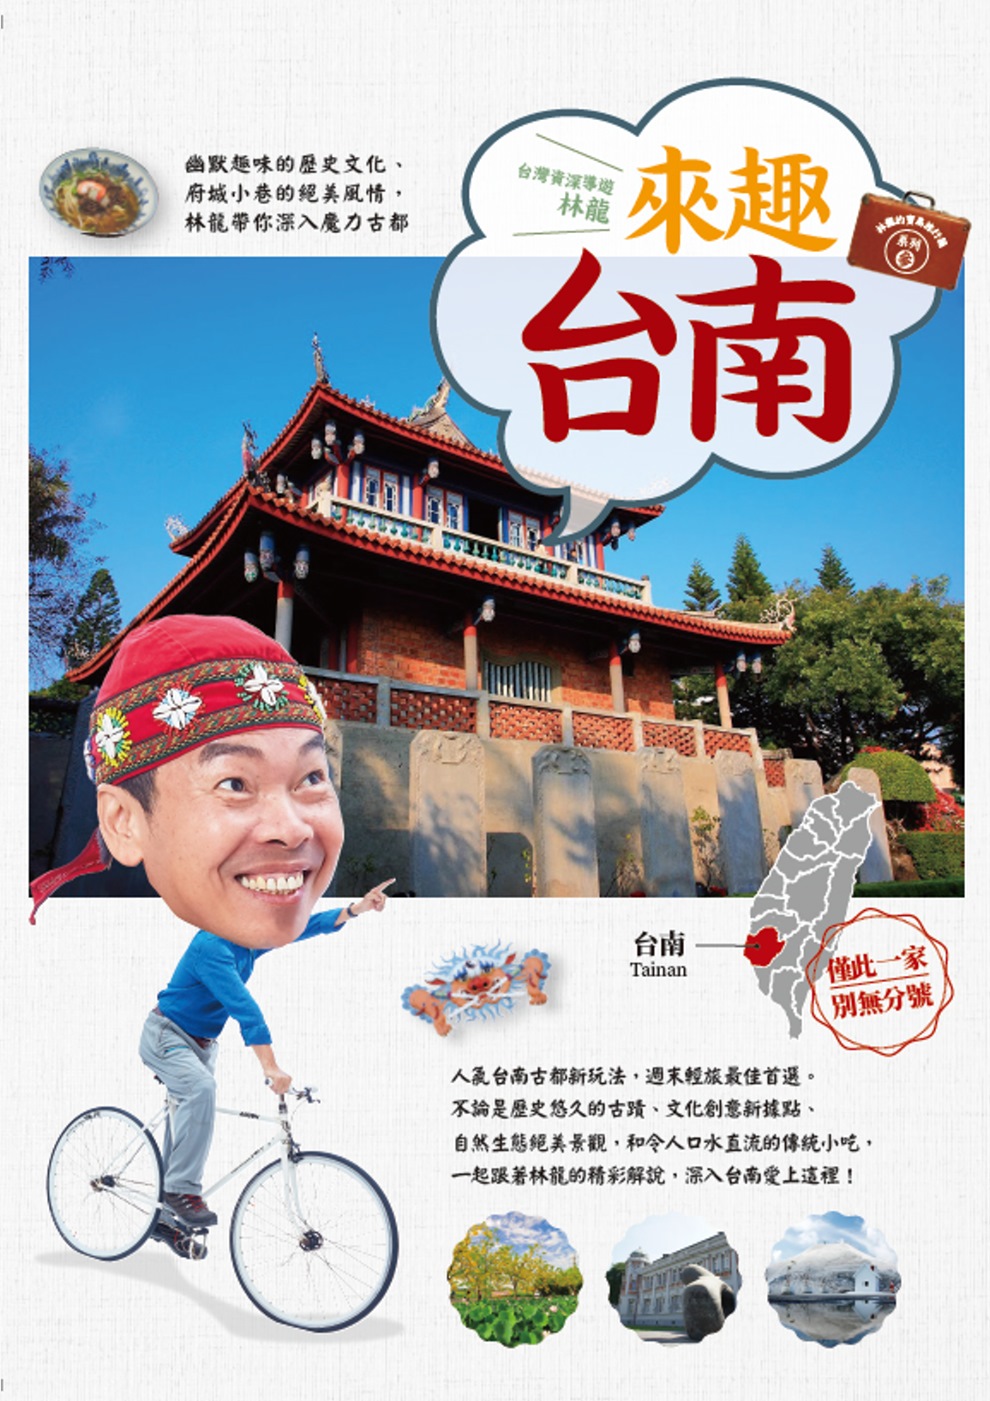 林龍的寶島旅行箱系列 3 來趣台南：幽默趣味的歷史文化、府城...